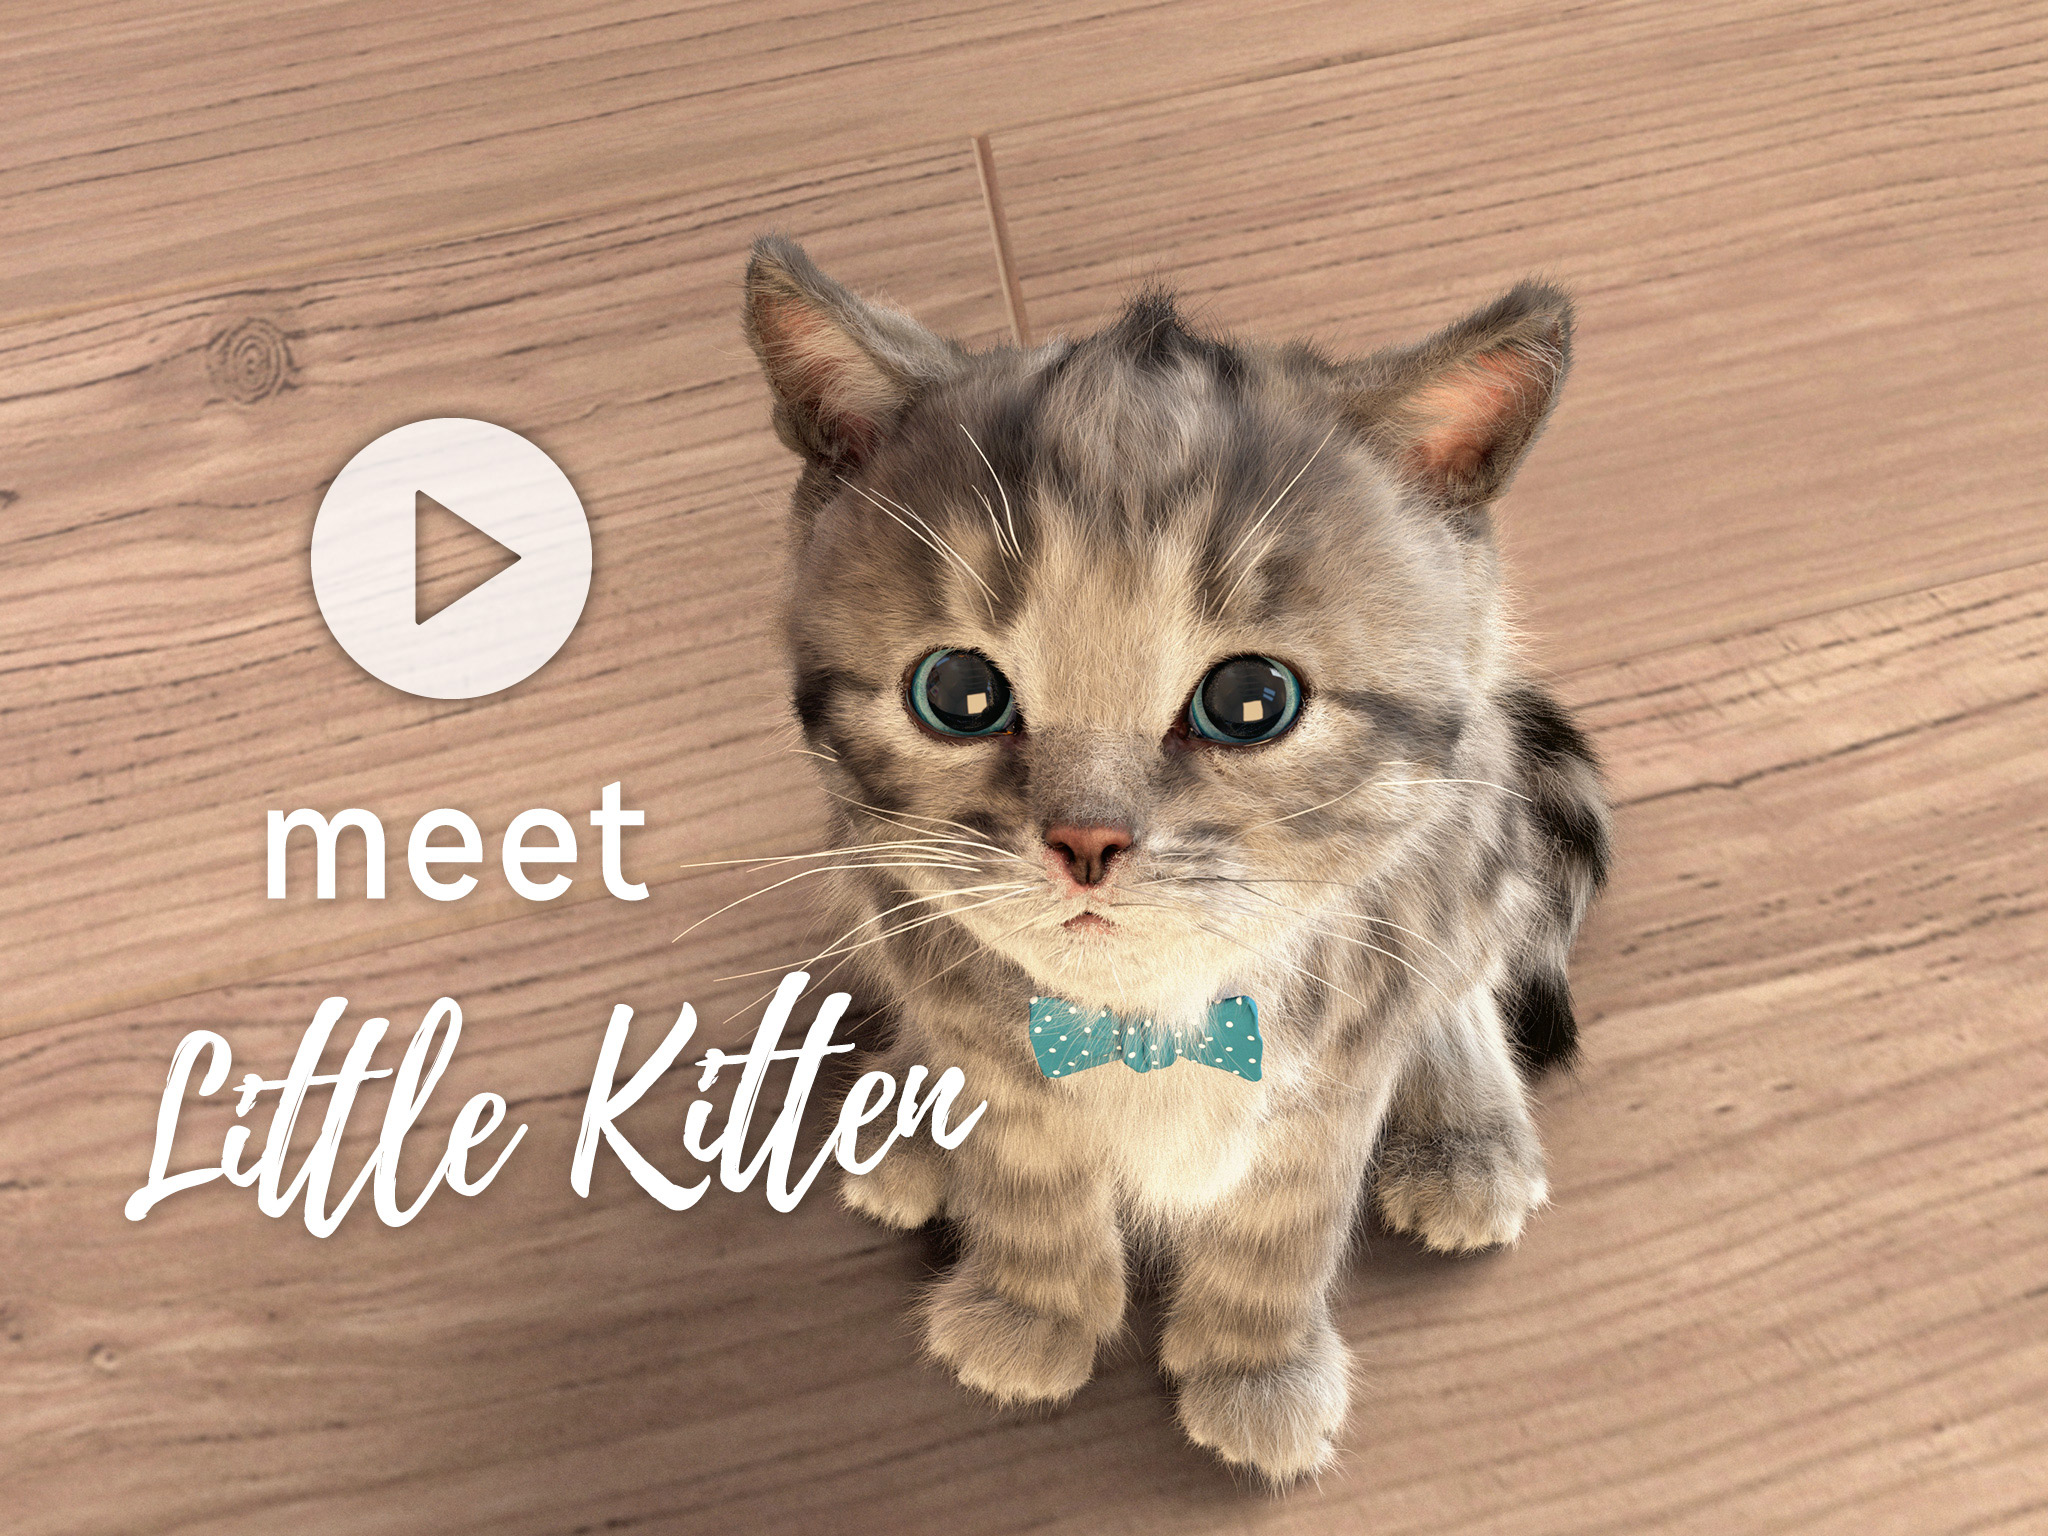 Little Kitten – My favorite Cat « Squeakosaurus